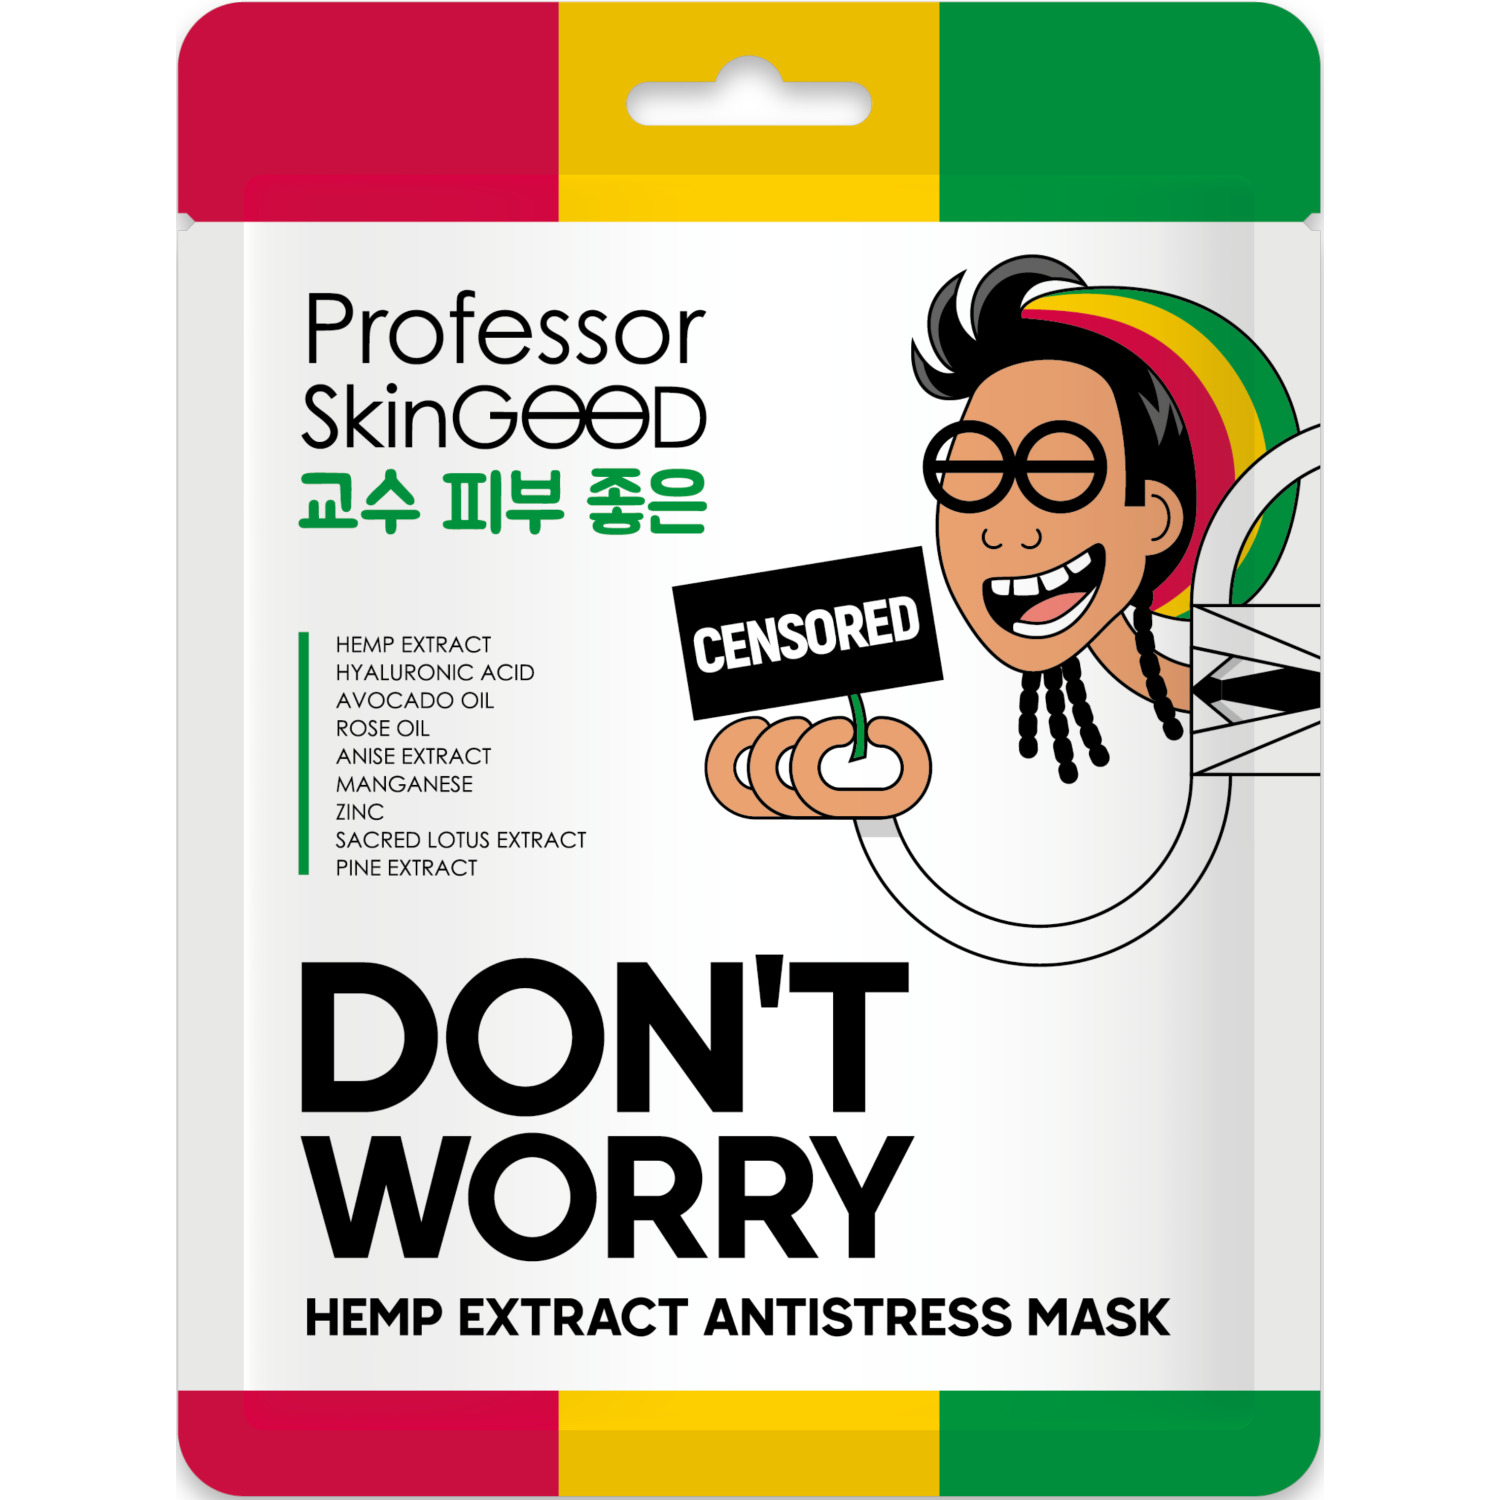 Маска для лица Professor SkinGOOD Hemp Extract Antistress Mask с экстрактом конопли, 25 мл